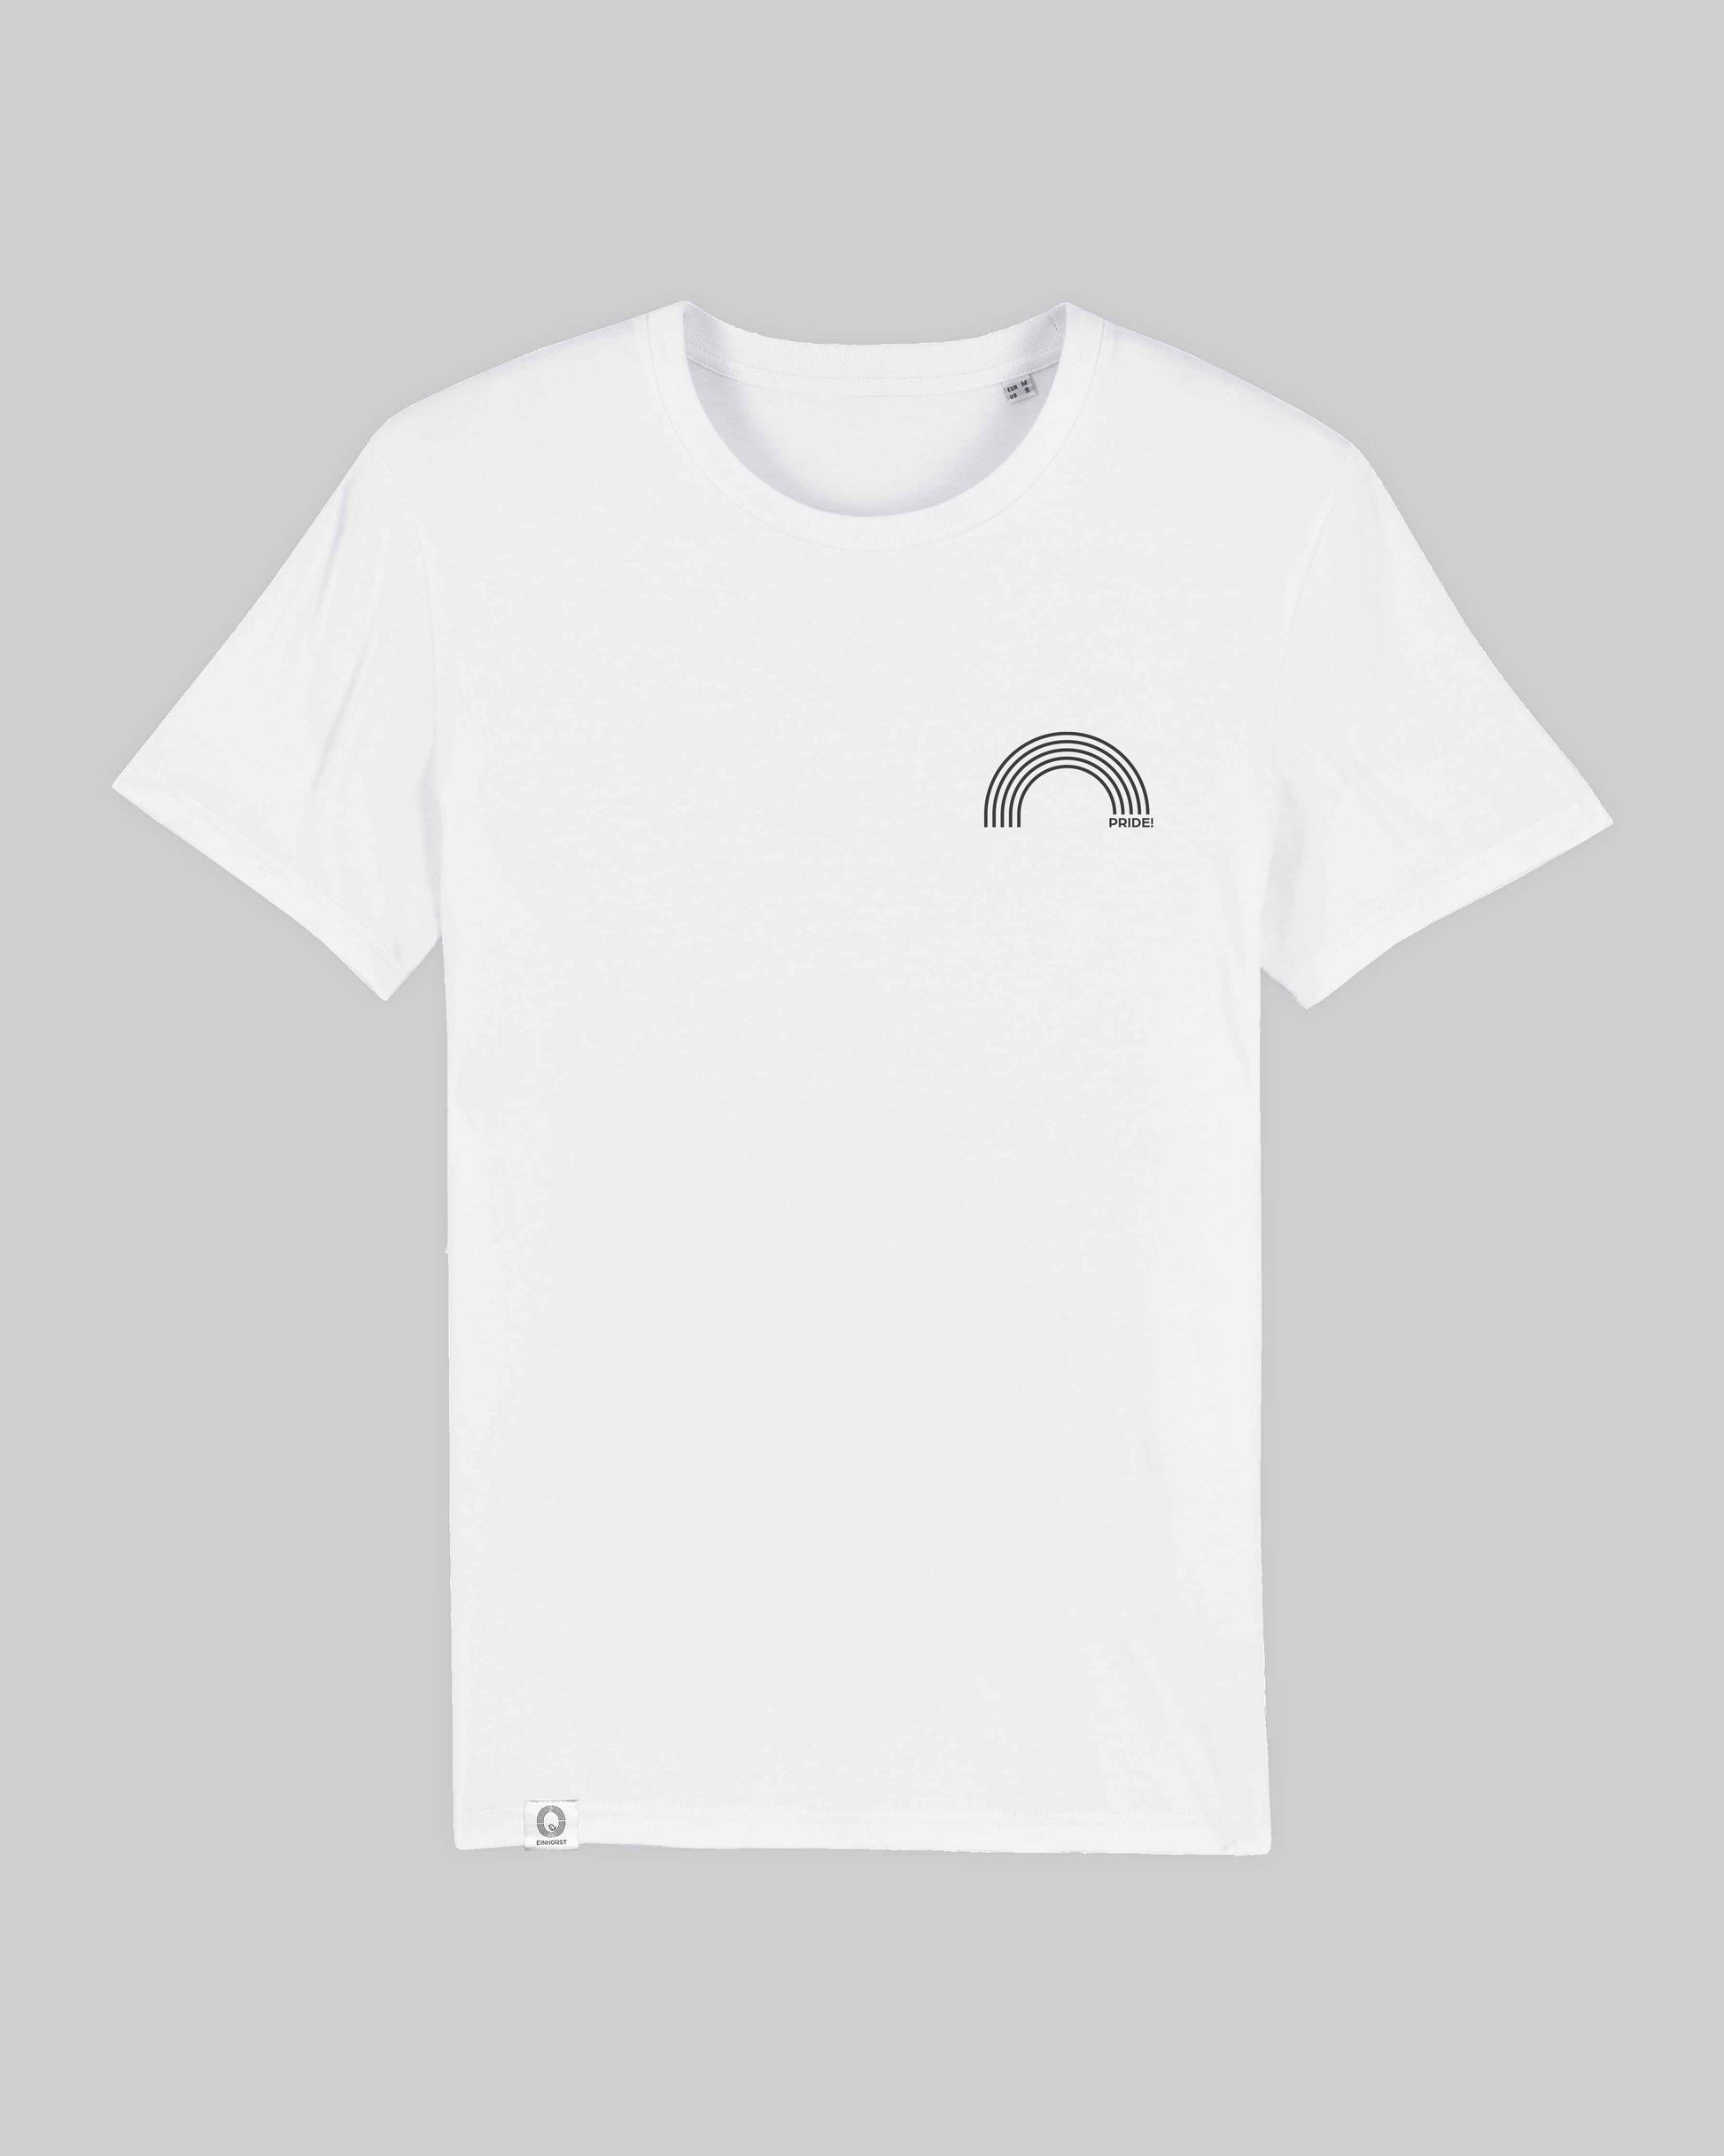 EINHORST® unisex Organic Shirt in Weiß mit dem Motiv "pride Regenbogen" in der Kombination schwarzer Regenbogen mit schwarzer Schrift, Bild von Shirt von vorne